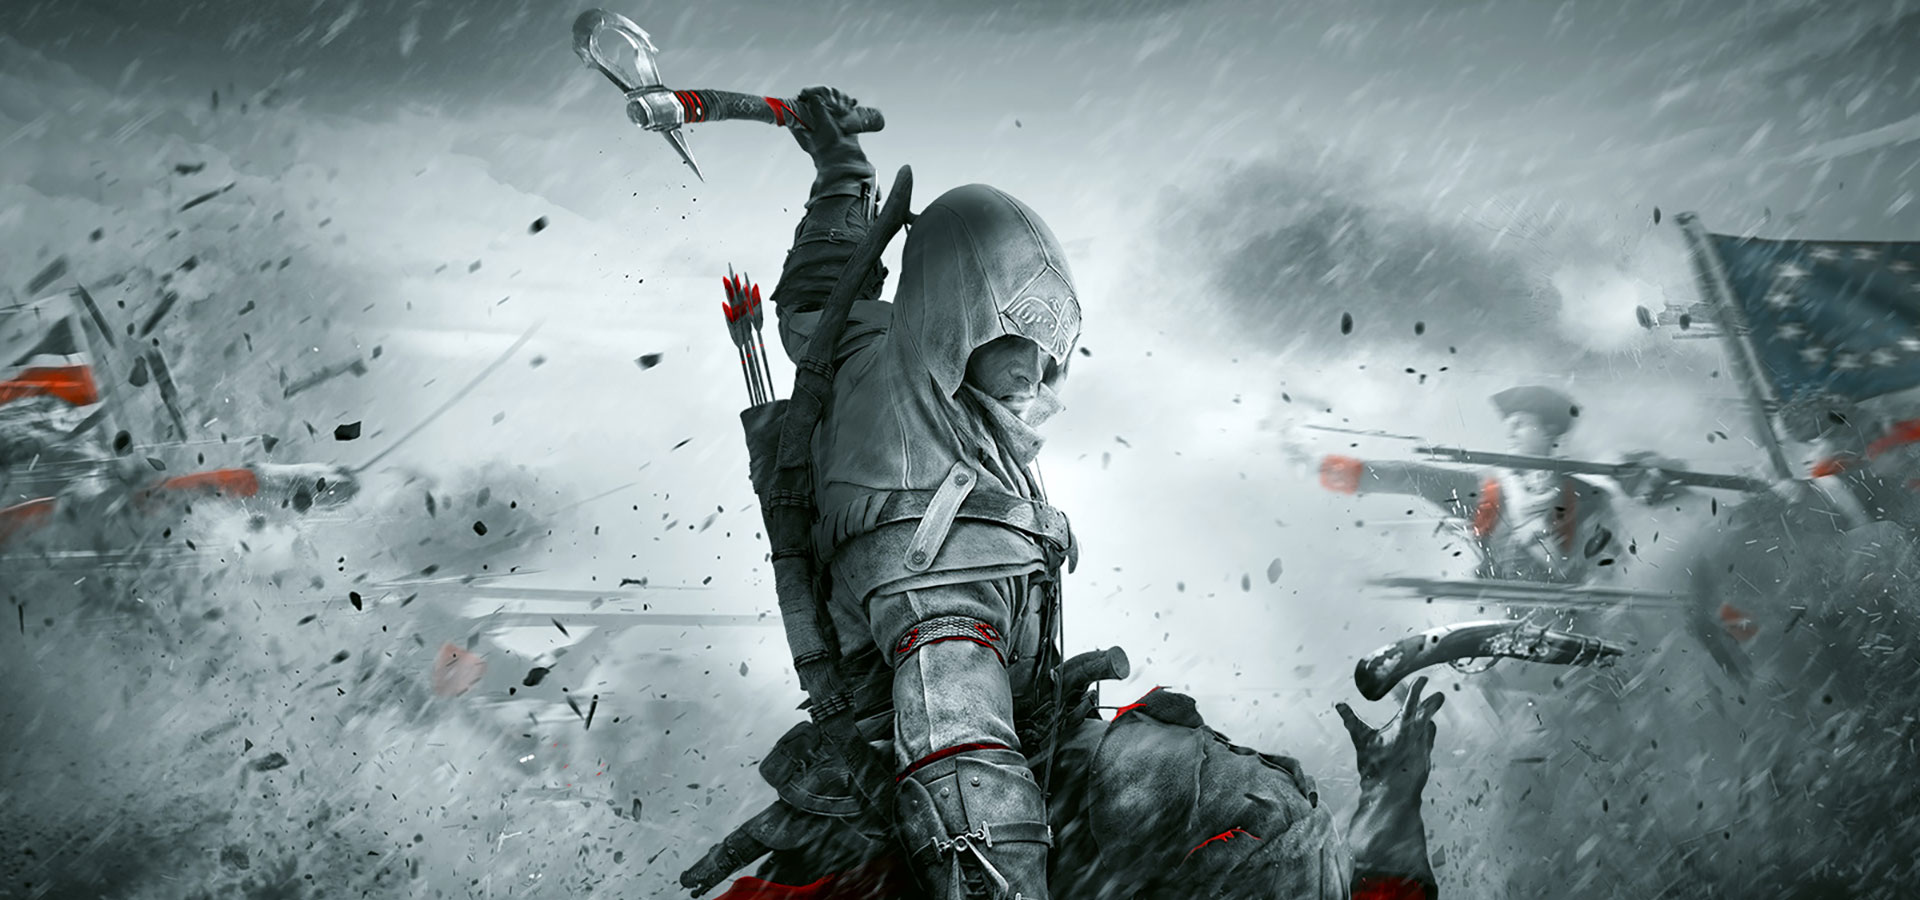 Chơi game Assassin\'s Creed III Remastered sẽ đưa bạn trở lại thời đại của các võ sĩ xạ thủ hoặc những vị anh hùng cứu thế giới. Với đồ họa tuyệt đẹp và cốt truyện hấp dẫn, bạn sẽ không thể rời mắt khỏi màn hình. Hãy trải nghiệm trò chơi này để thấy sự khác biệt.